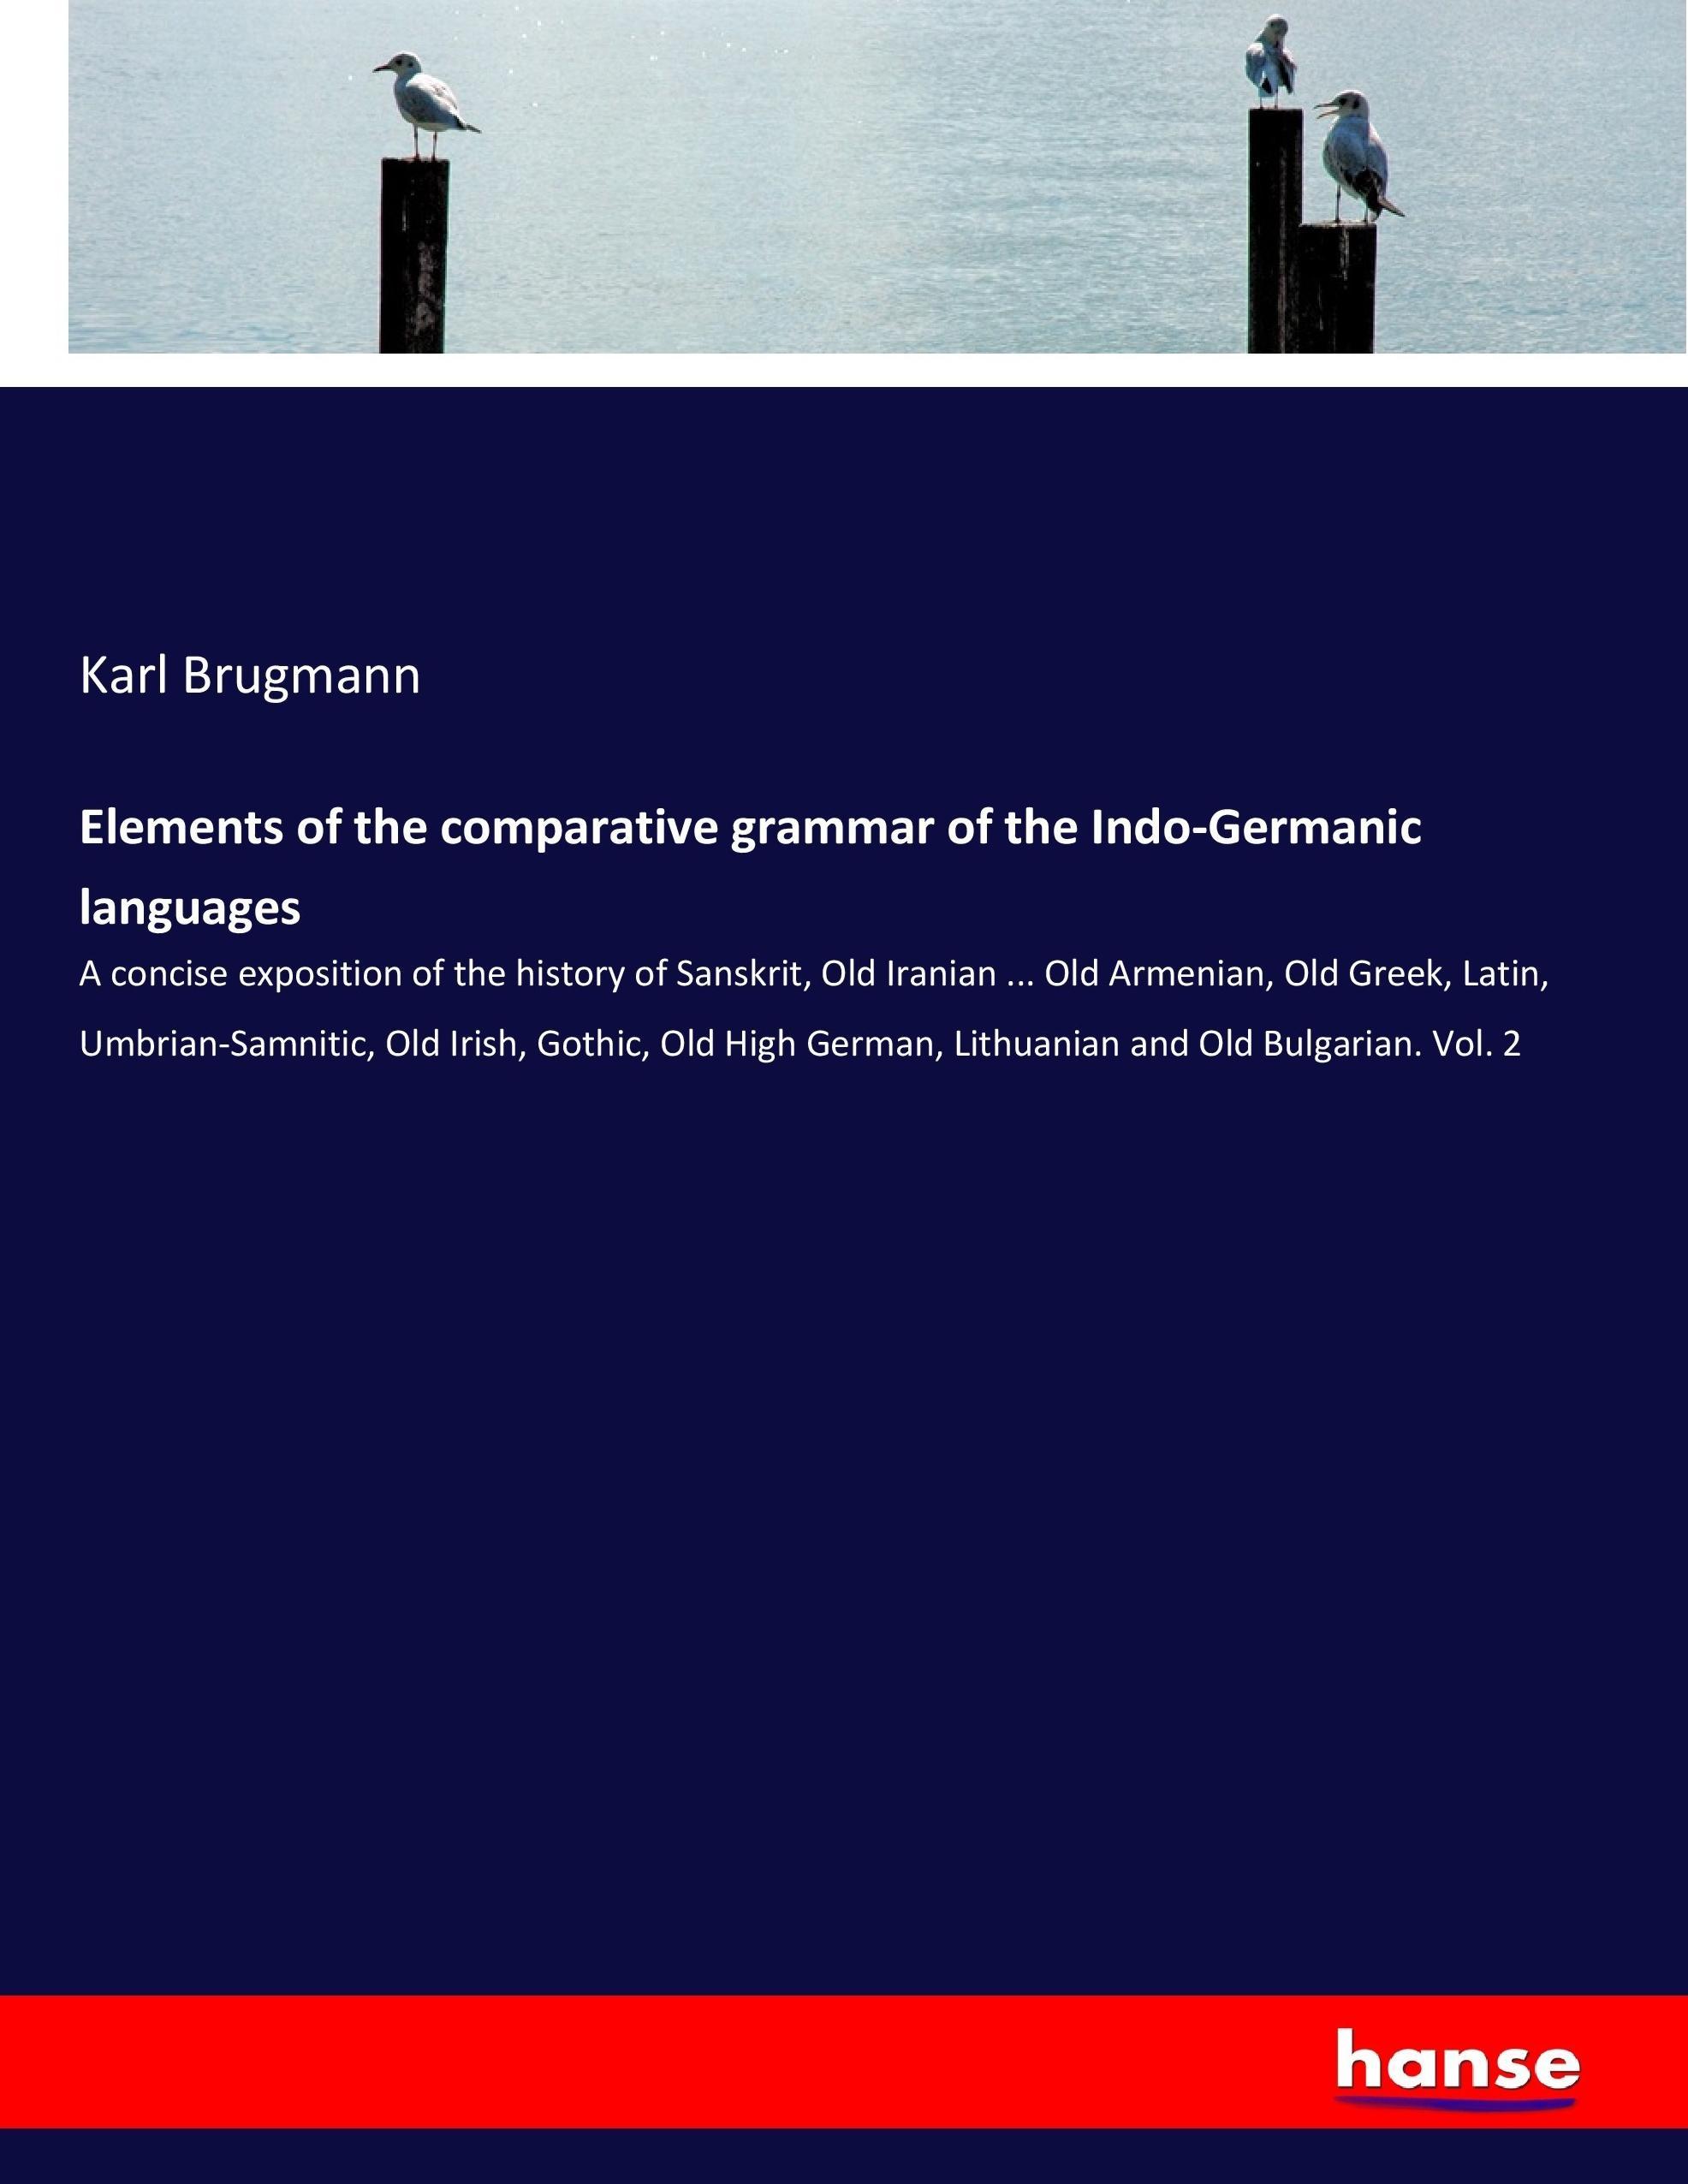 Elements of the comparative grammar of the Indo-Germanic languages | Karl Brugmann | Taschenbuch | Paperback | 516 S. | Englisch | 2017 | hansebooks | EAN 9783744737616 - Brugmann, Karl